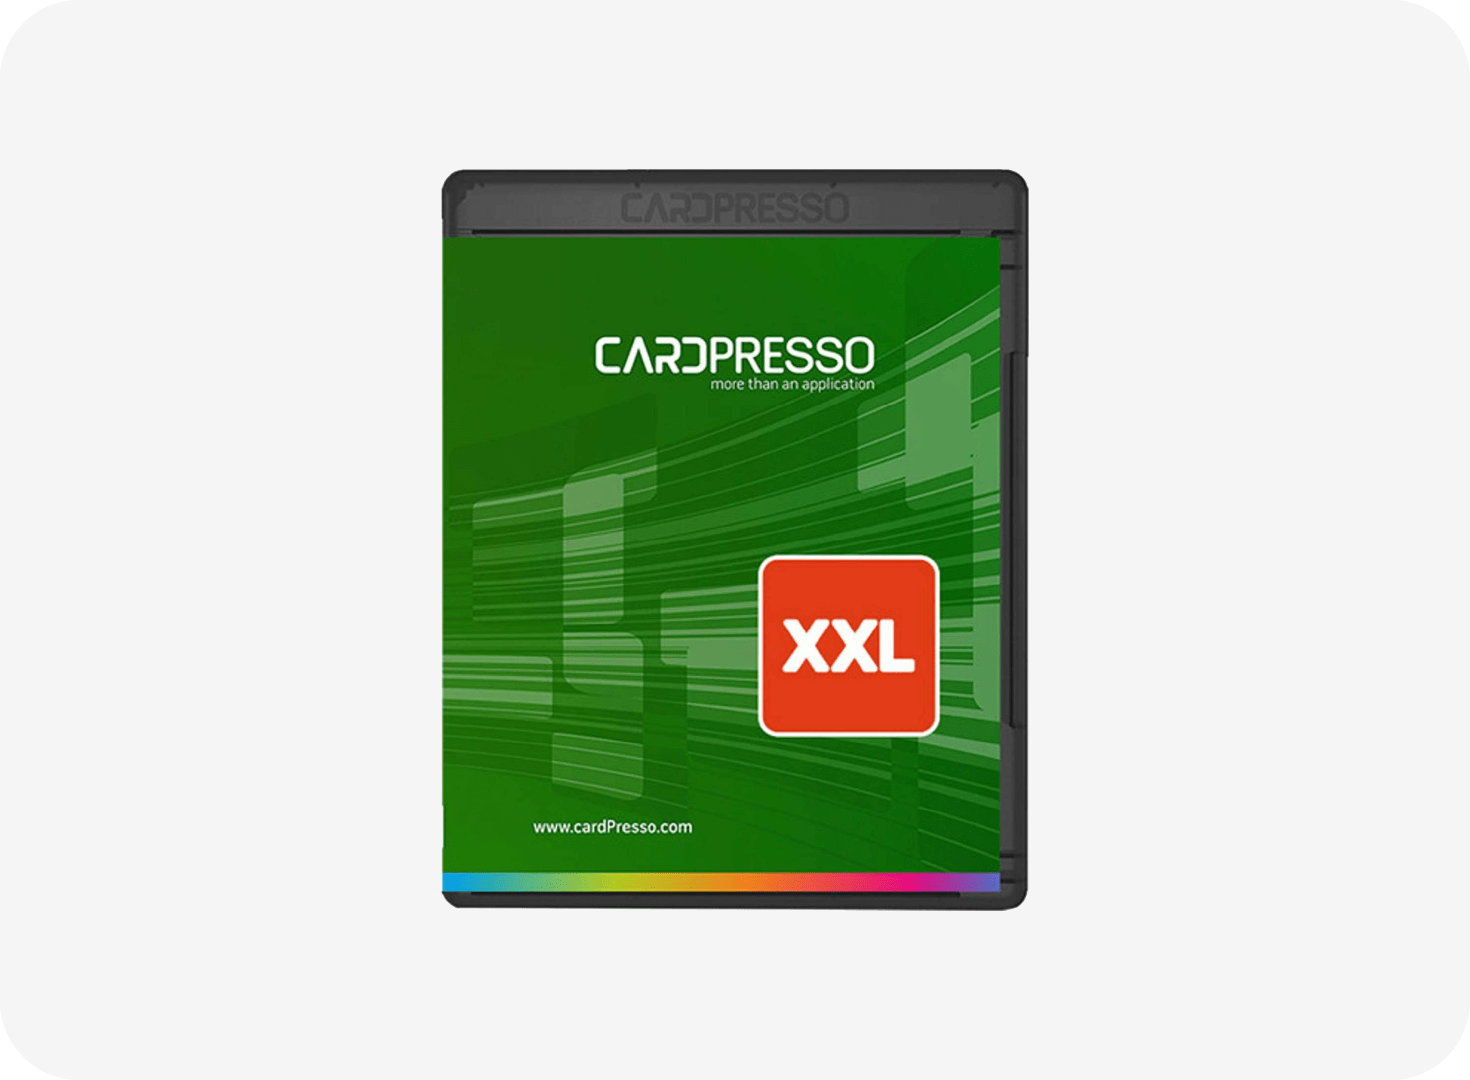 cardpresso download